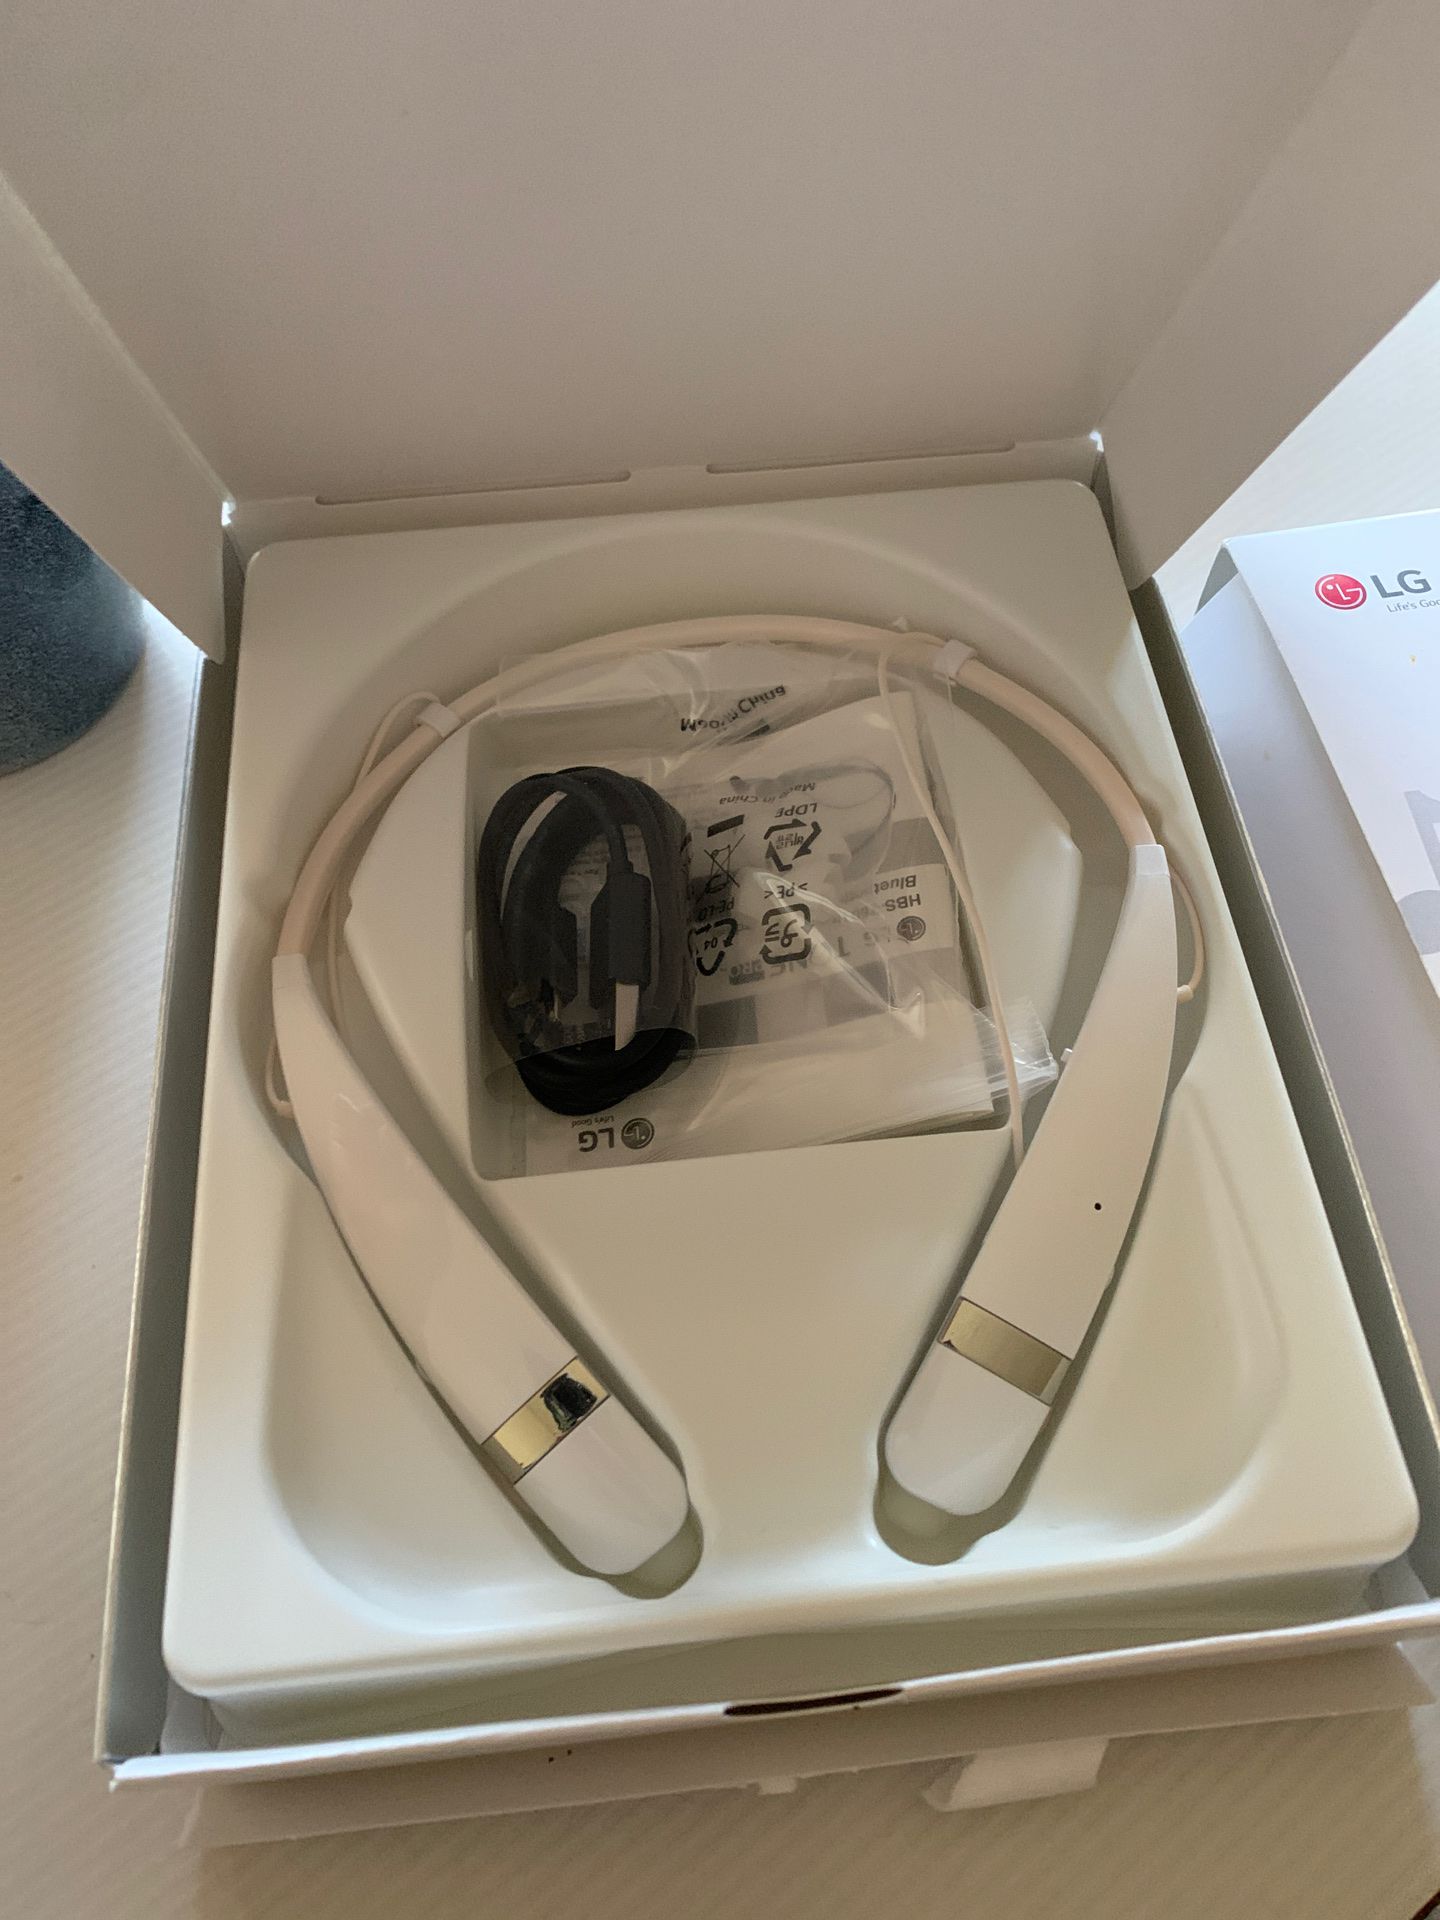 New headphones LG Tone pro